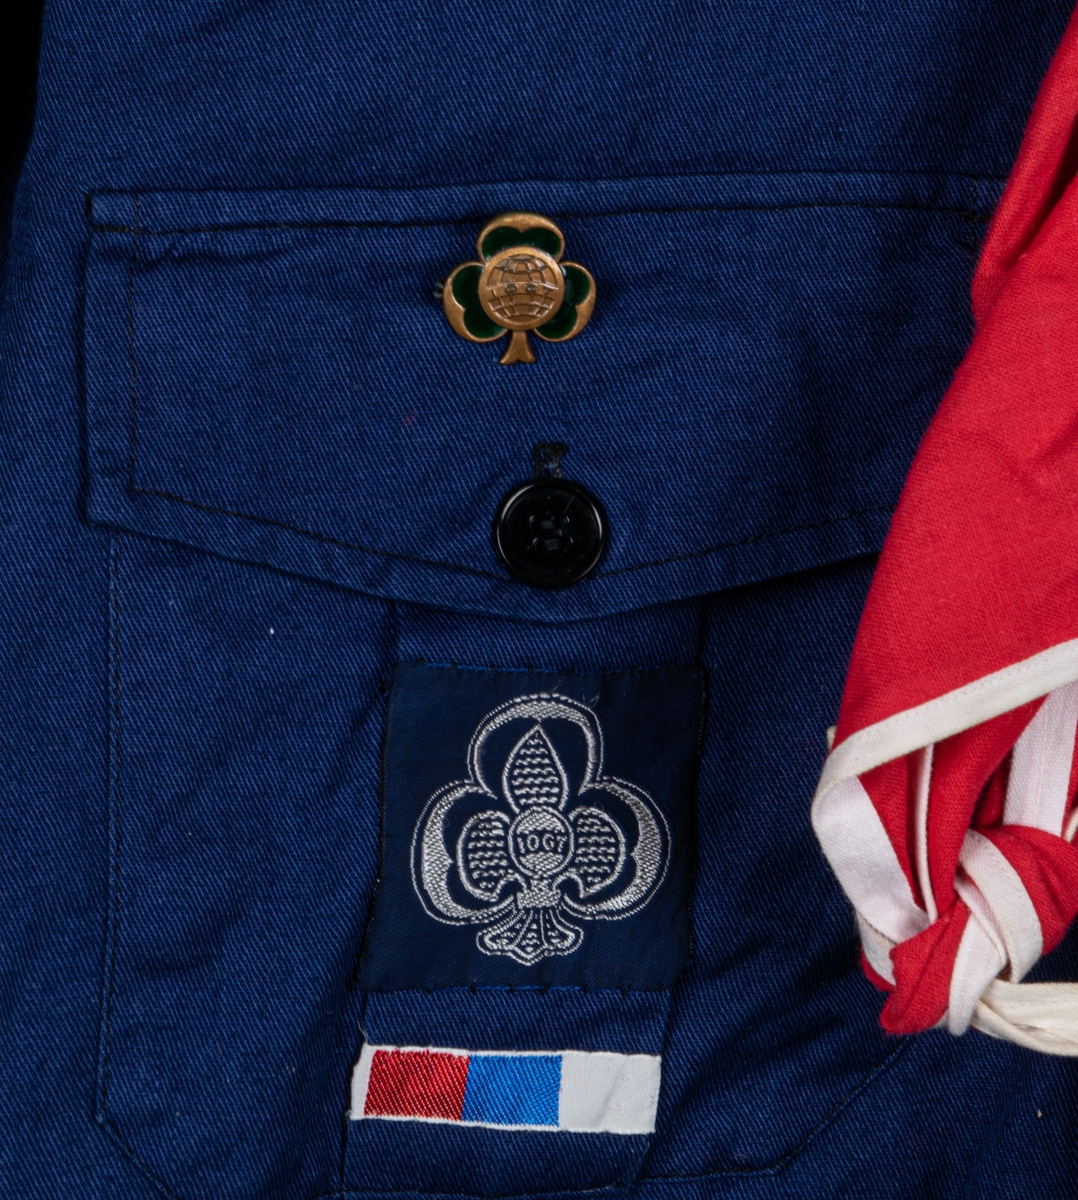 Blå scoutskjorta av bomull. Knäppning på bröstet samt fickor med IOGT-pin på den vänstra. Tygmärke på ena fickan. På höger axel tygmärke: "Bomhus", på vänster axel märke med brinnande fackla och texten "Var redo", och "Seniorscout". Runt nacken en röd sjal med vit kant samt en blåvit snodd med svart visselpipa.

I nacken vävd etikett: "Specialtillverkad för AB SCOUTKÖP, IOGT:s scoutförbund".
Storlek 38.